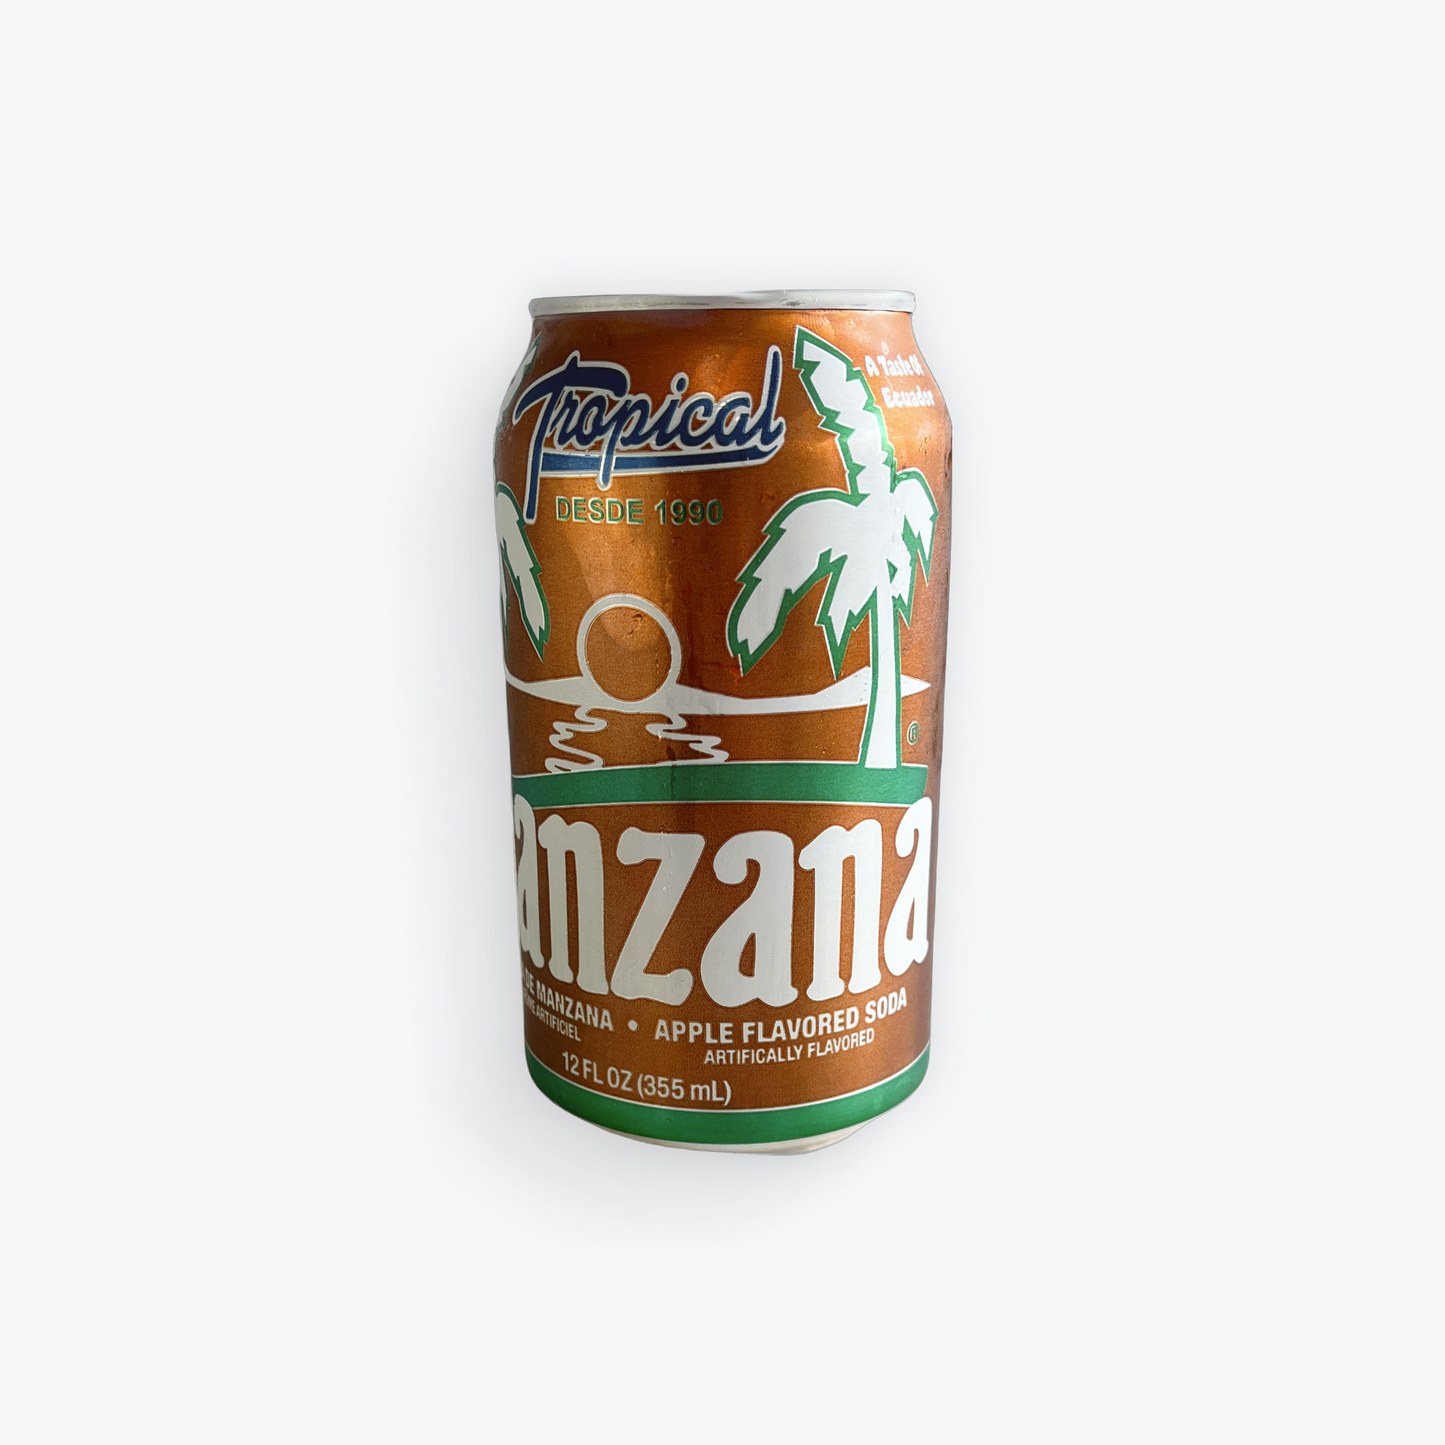 Tropical - Manzana Soda, 12 oz, Single can